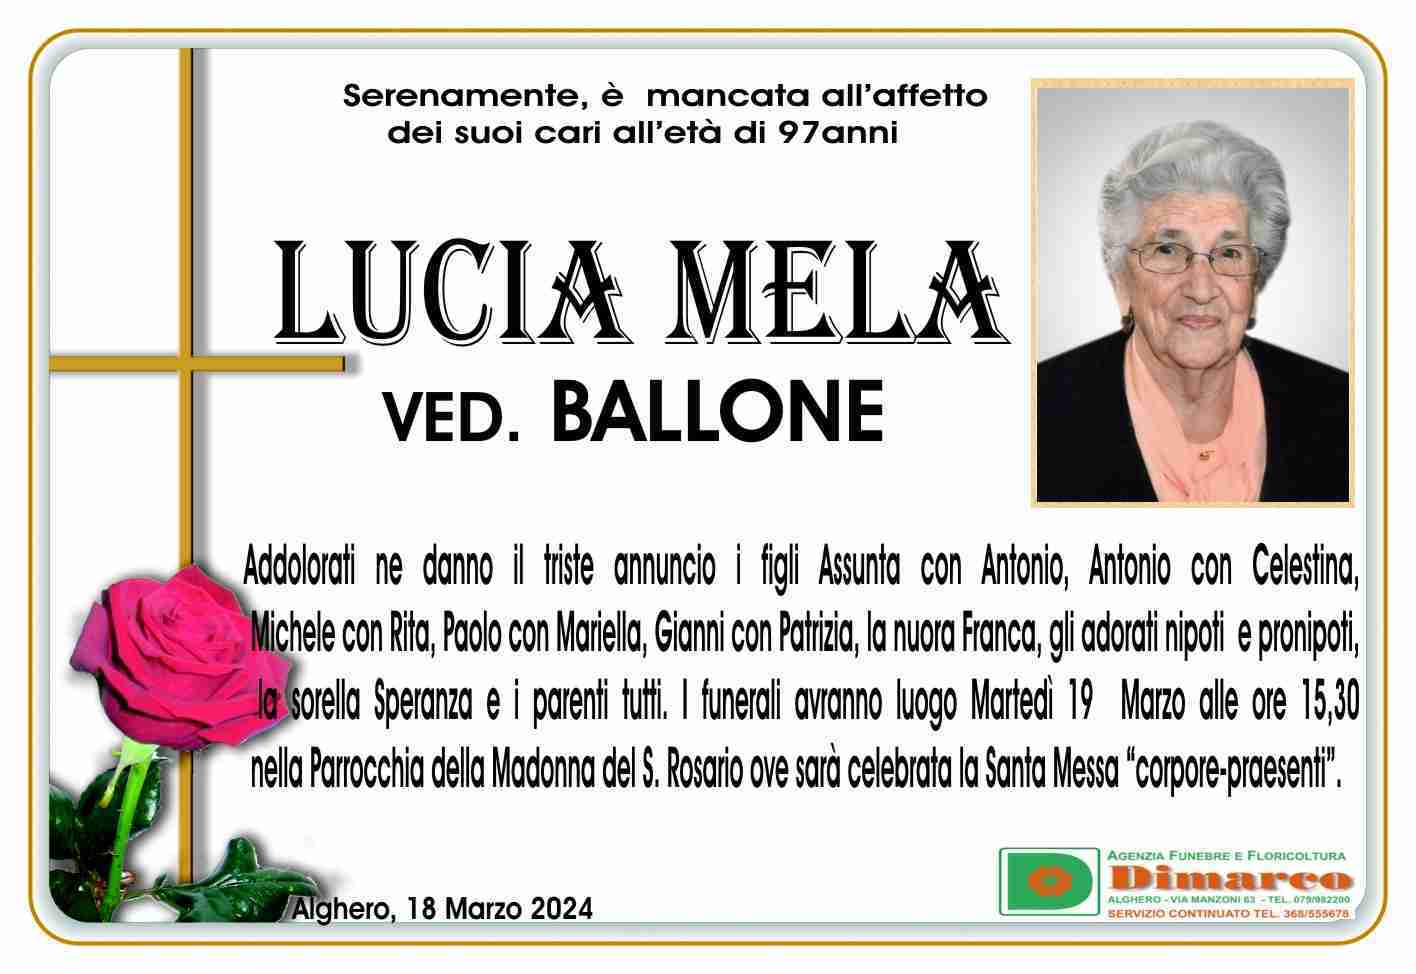 Lucia Mela ved. Ballone